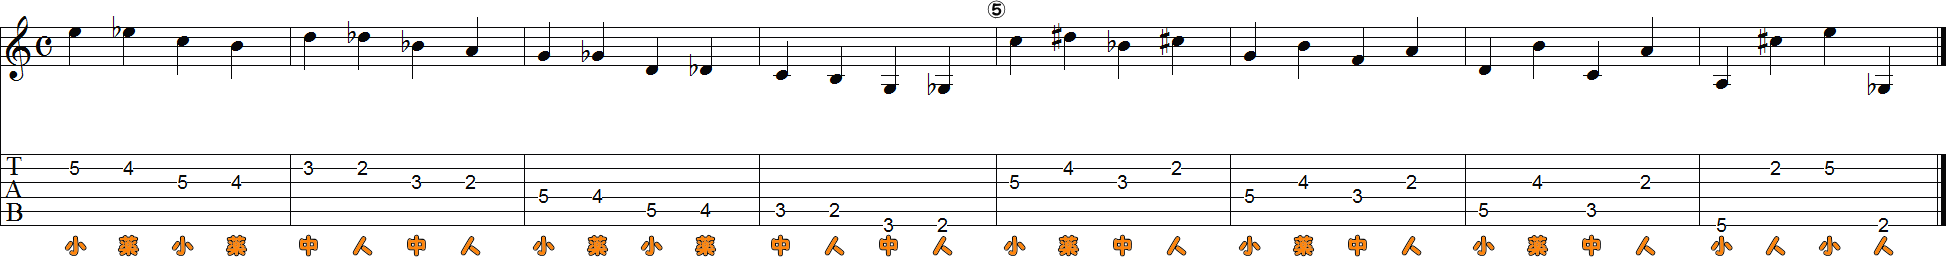 6・5・4・3・2弦の運指押弦8小節